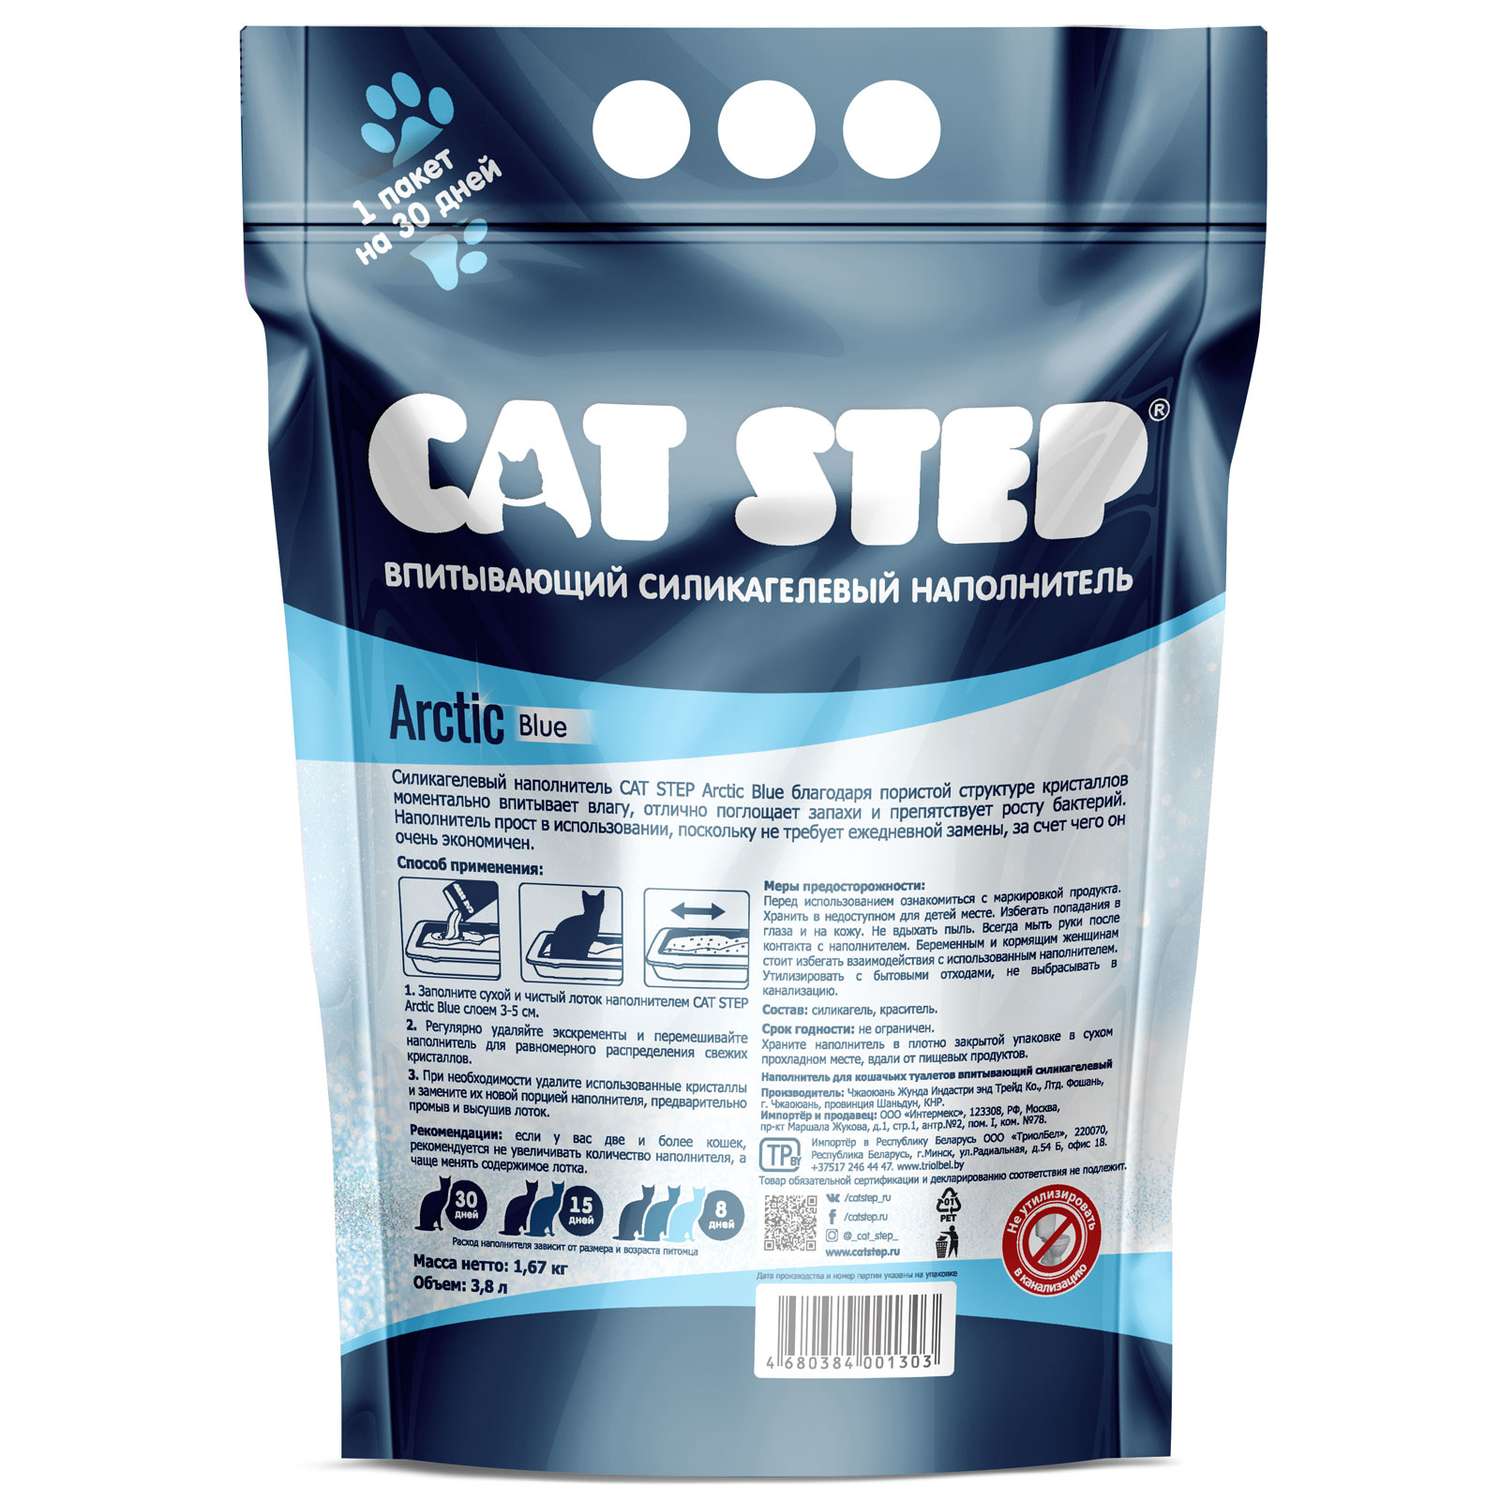 Наполнитель Cat Step Arctic Blue впитывающий силикагелевый 3.8л - фото 3